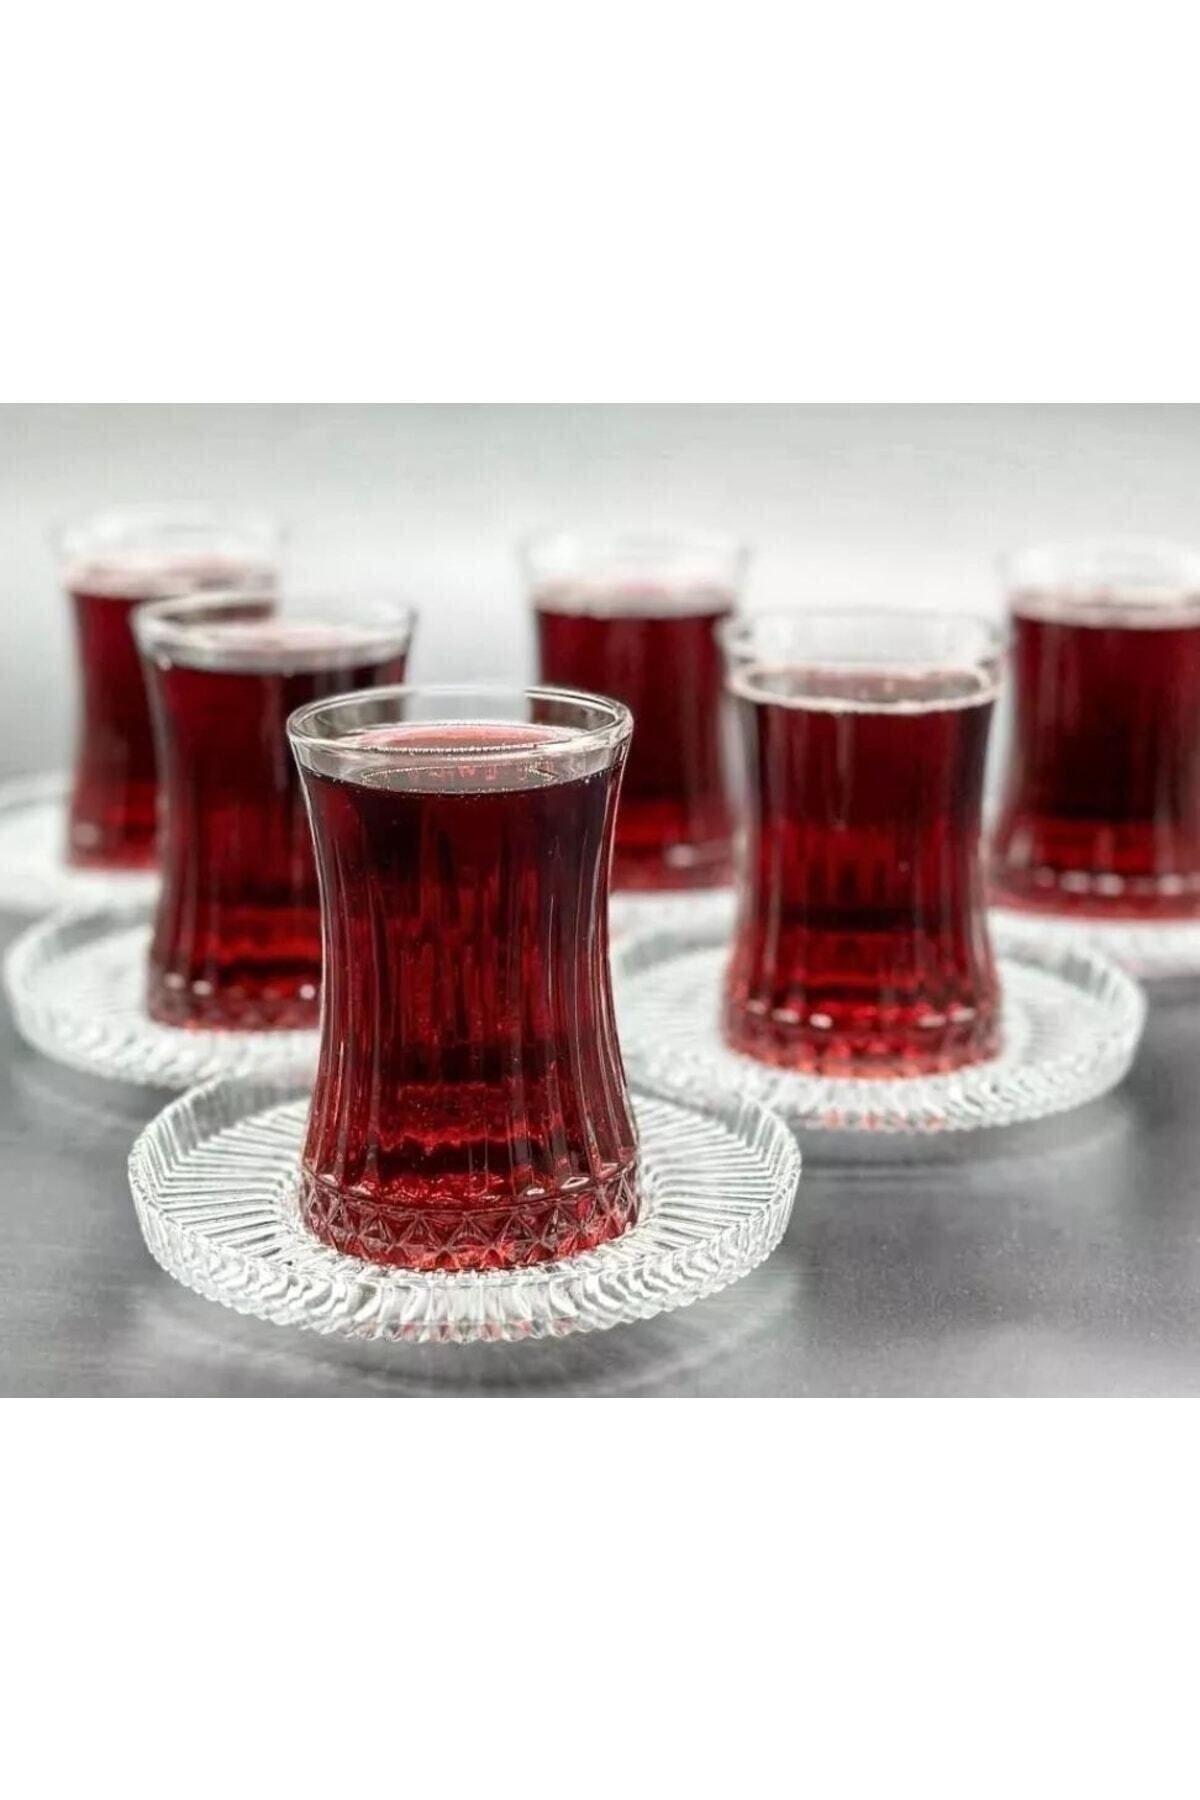 İLBEY Sadece Tabak6 Parça (elysia Çay Bardağı Uyumlu Bardak Yok) Riva Çay Tabağı 13cm Çap